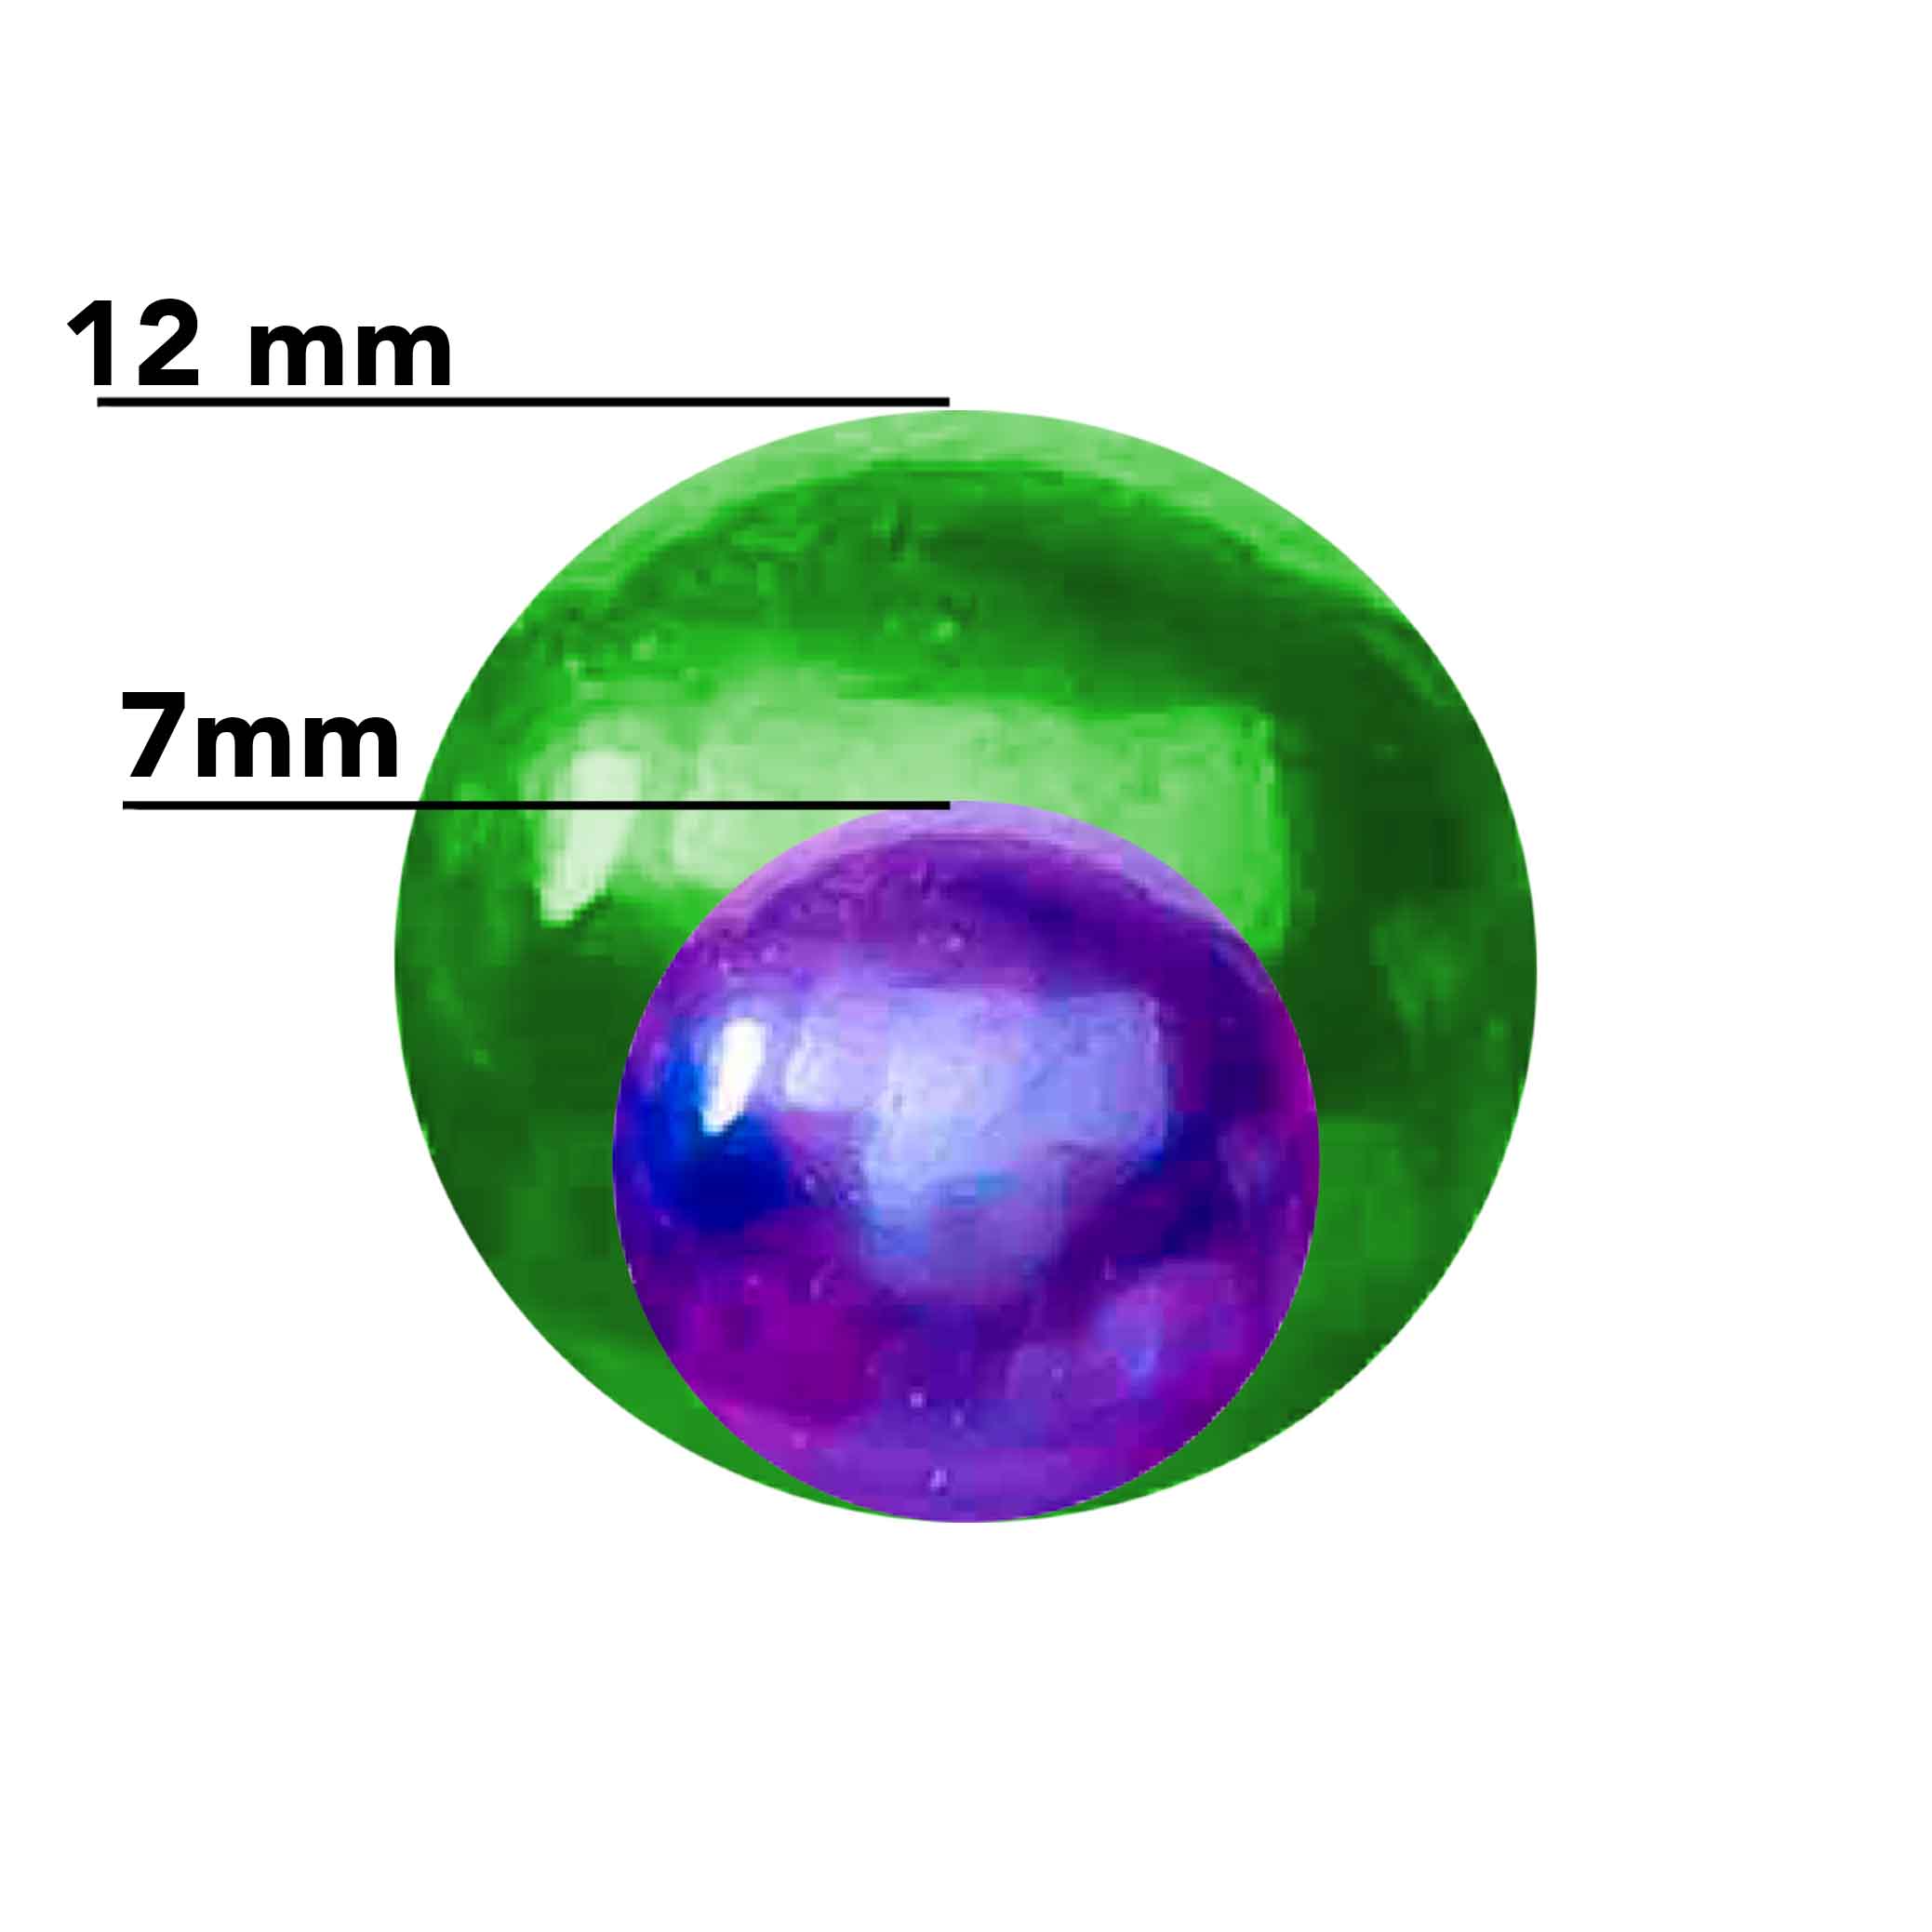 Perla Suelta 9-14mm Edison (1 Perla) (Varios Colores)